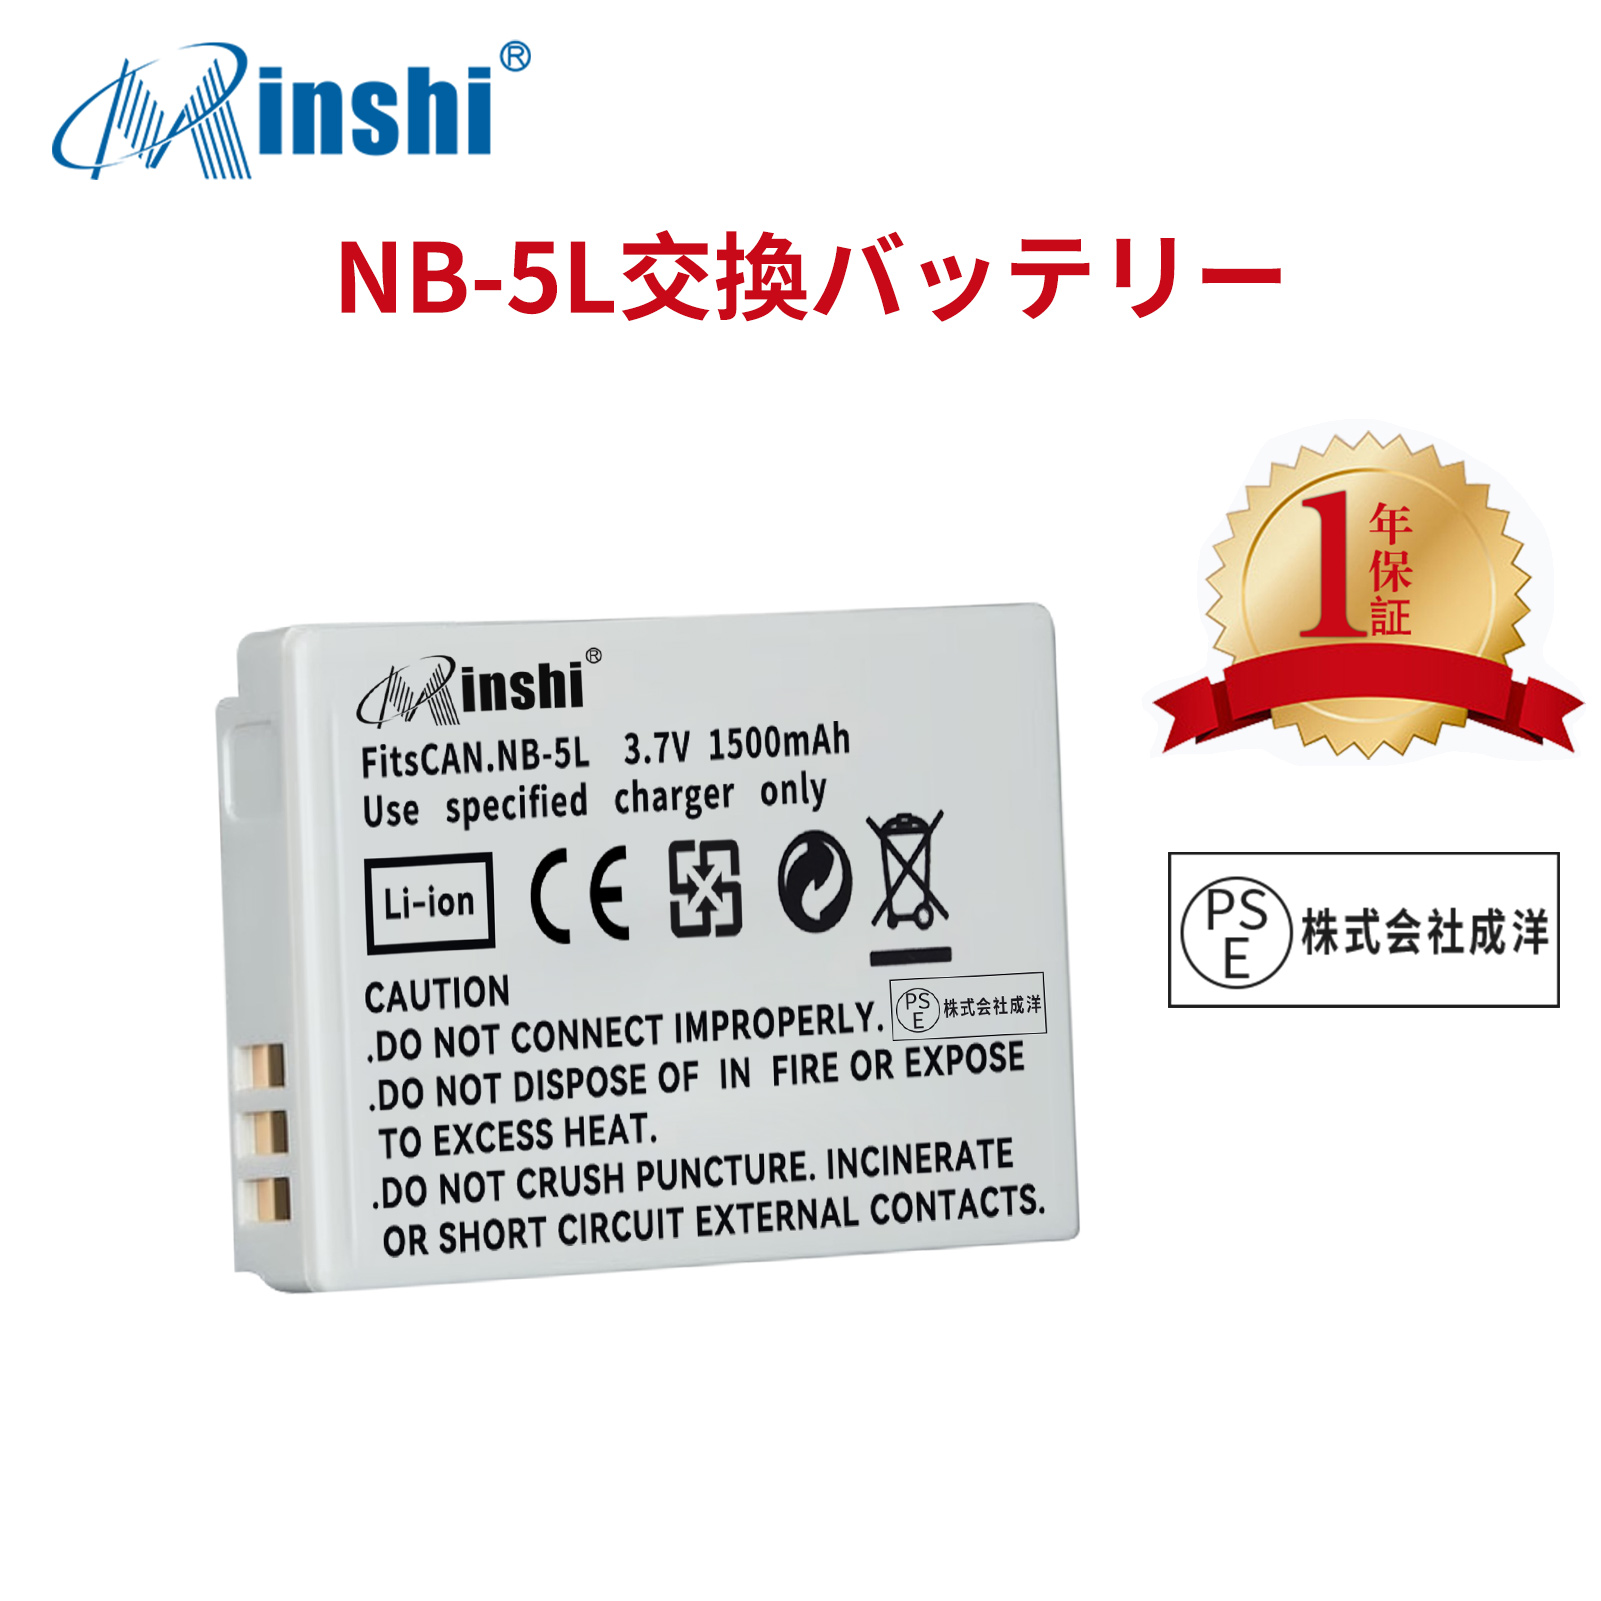 【1年保証】minshi CANON NB-5L 820IS NB-5L【1500mAh 3.7V】PSE認定済 高品質交換用バッテリー